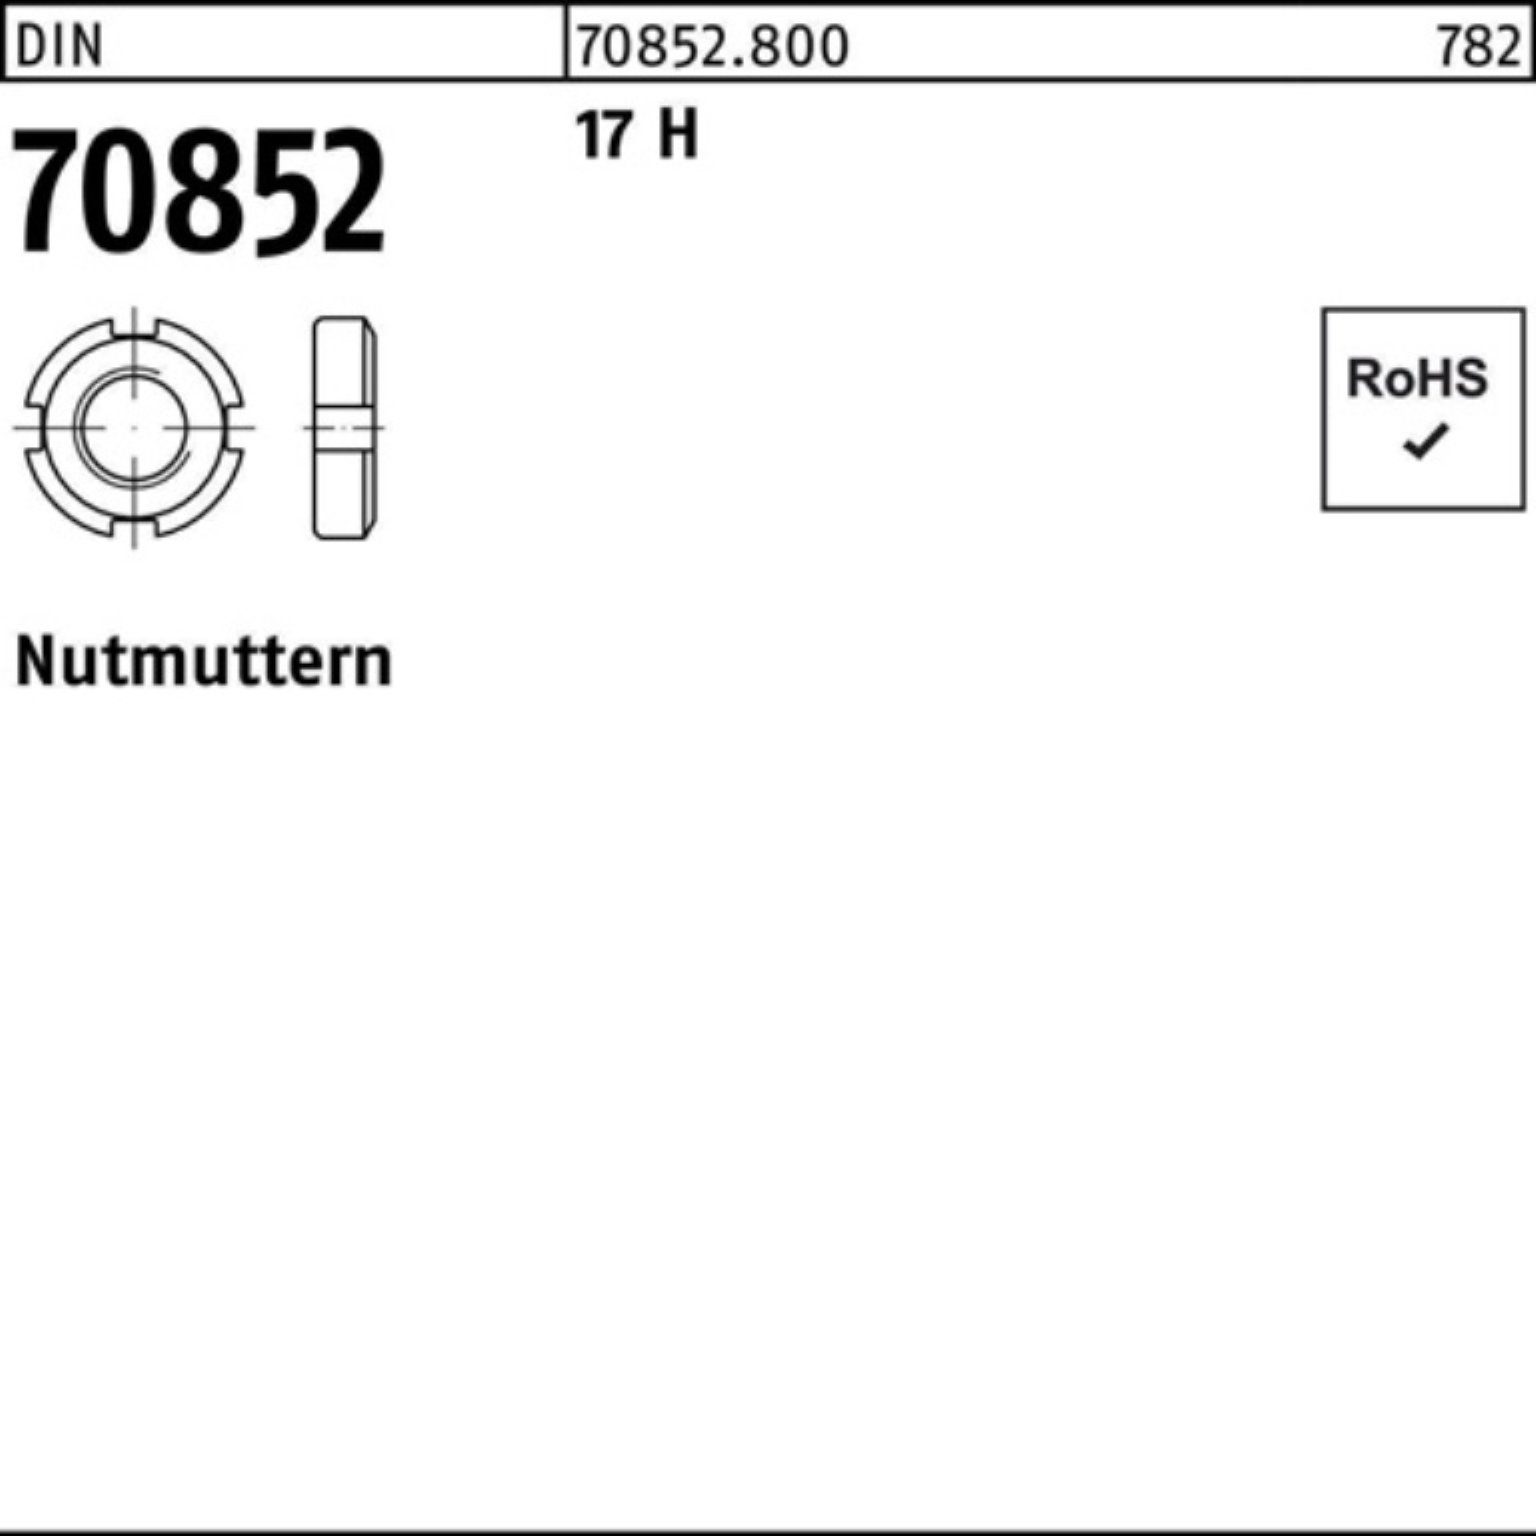 Reyher Nutmutter 100er Pack Nutmutter DIN 70852 M50x 1,5 17 H 1 Stück DIN 70852 17 H N